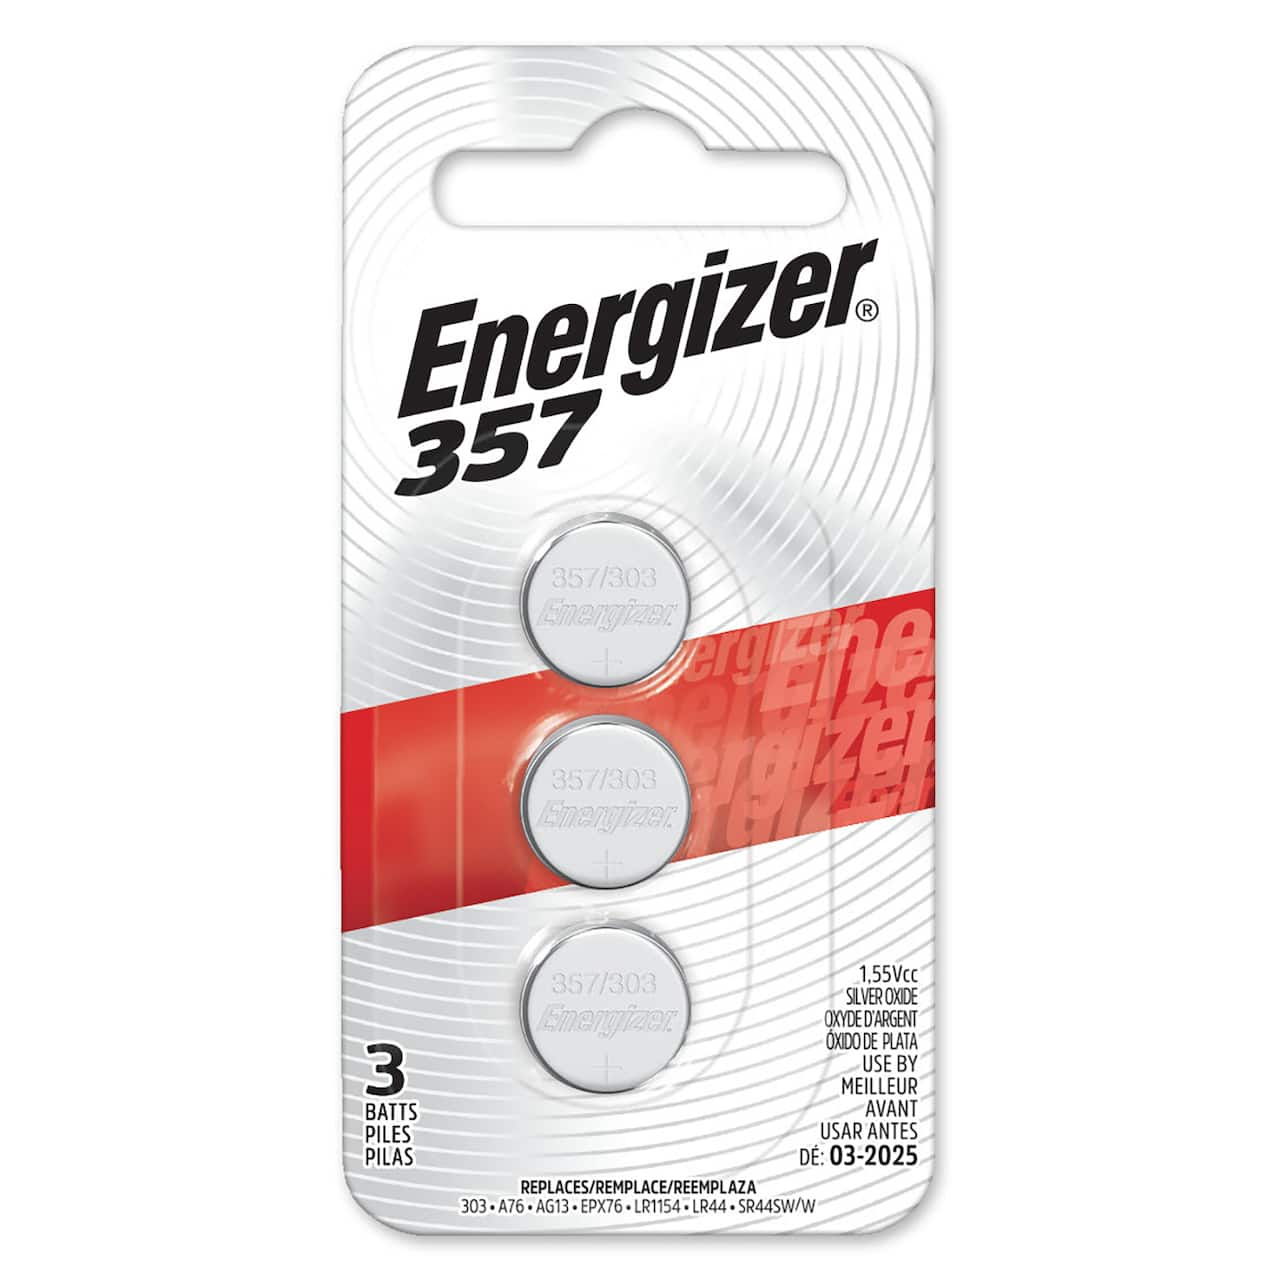 Dokument båd gå ind Energizer® 357 1.55V Silver Oxide Batteries, 3ct. | Michaels